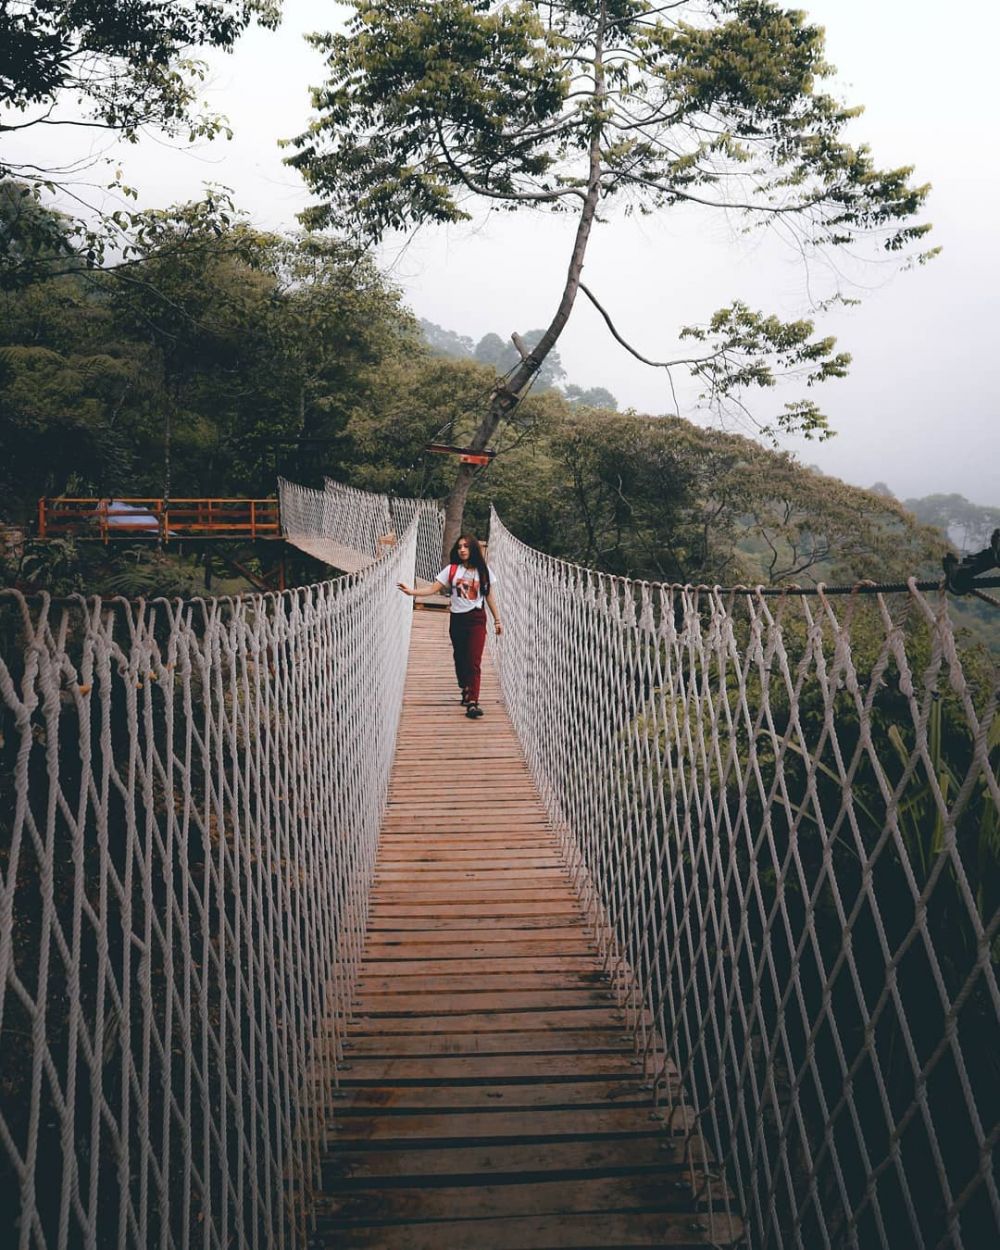 Tempat Wisata Jembatan Gantung Di Bogor